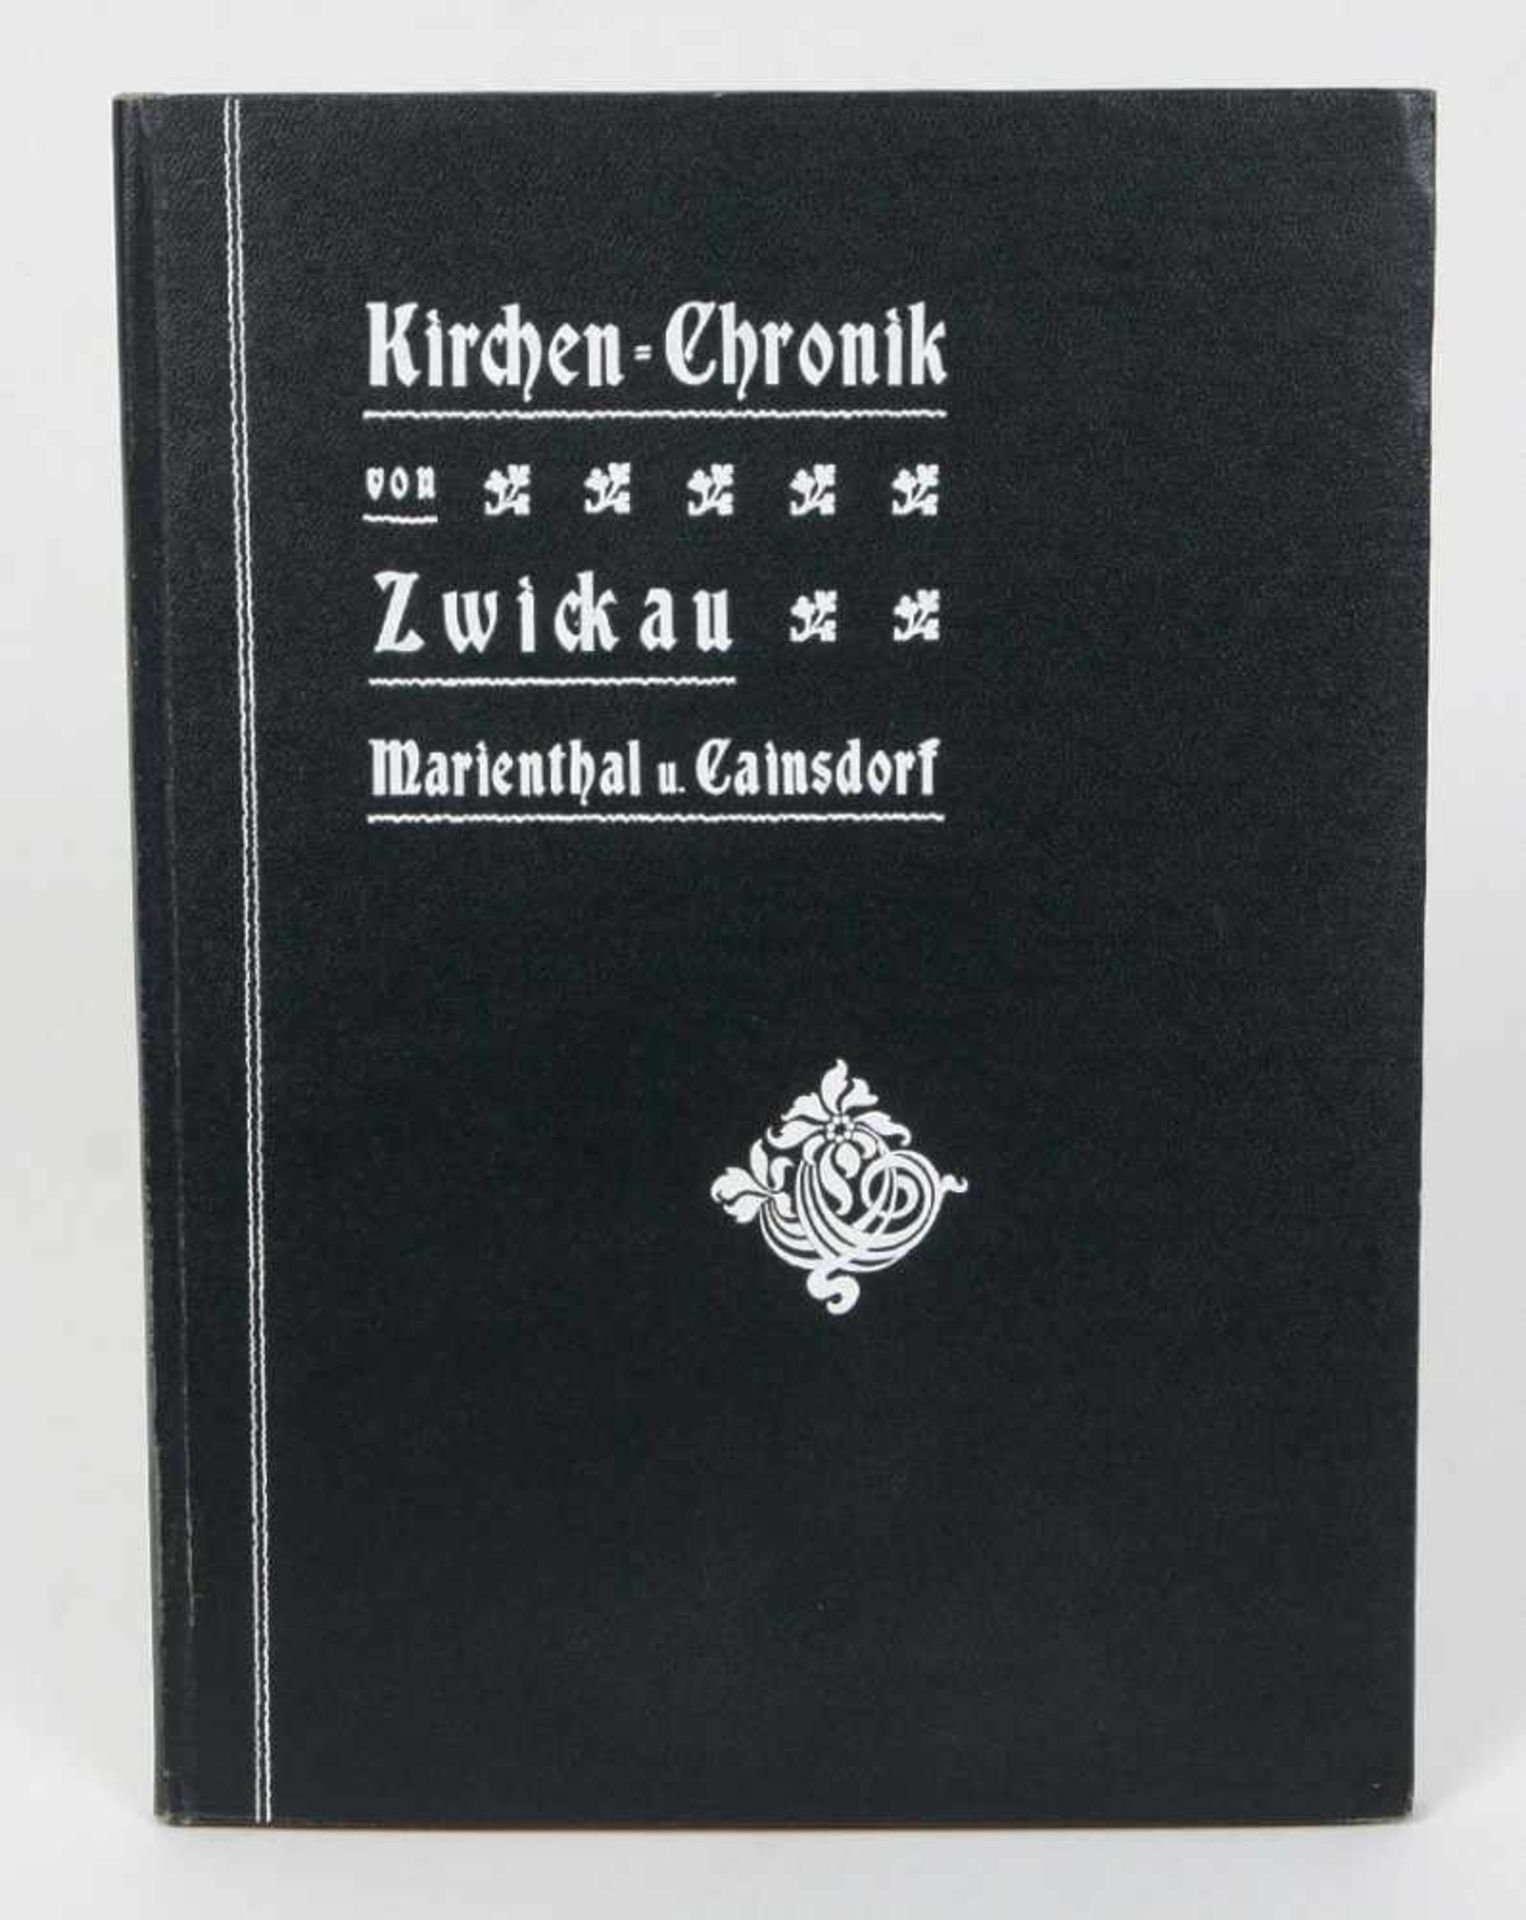 Kirchenchronik von Zwickau, Marienthal u. CainsdorfMit ca. 40 Abb., Sonderabdruck aus der Neuen